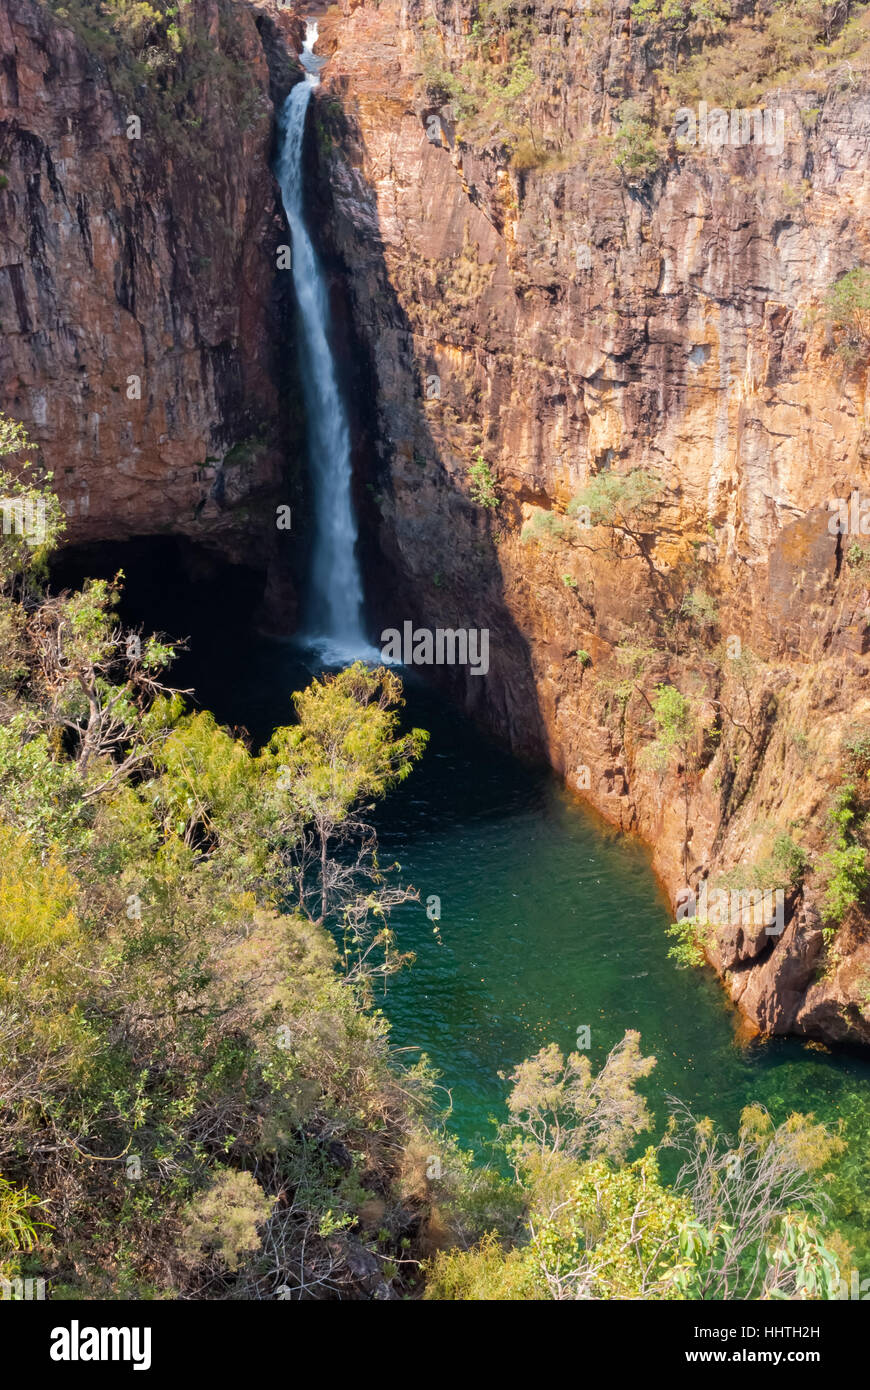 Falls dans le Litchfield National Park, Australie Banque D'Images